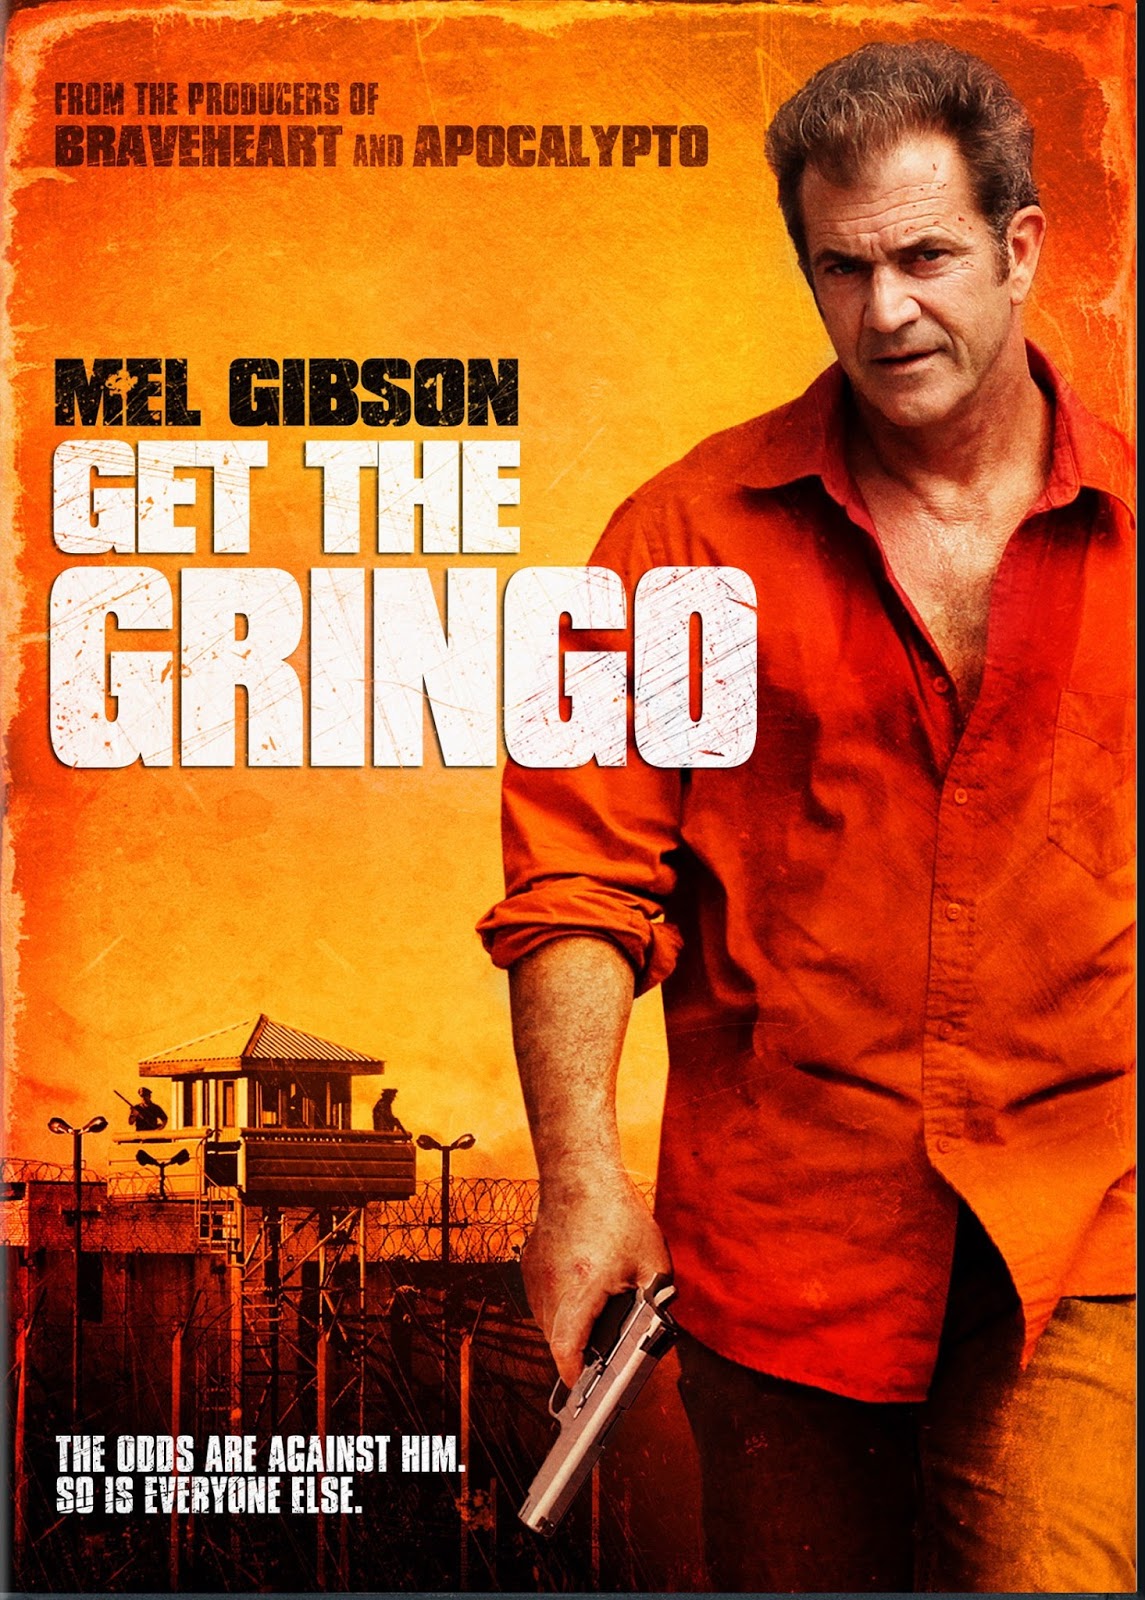 ดูหนัง Get the Gringo (2012) คนมหากาฬระอุ